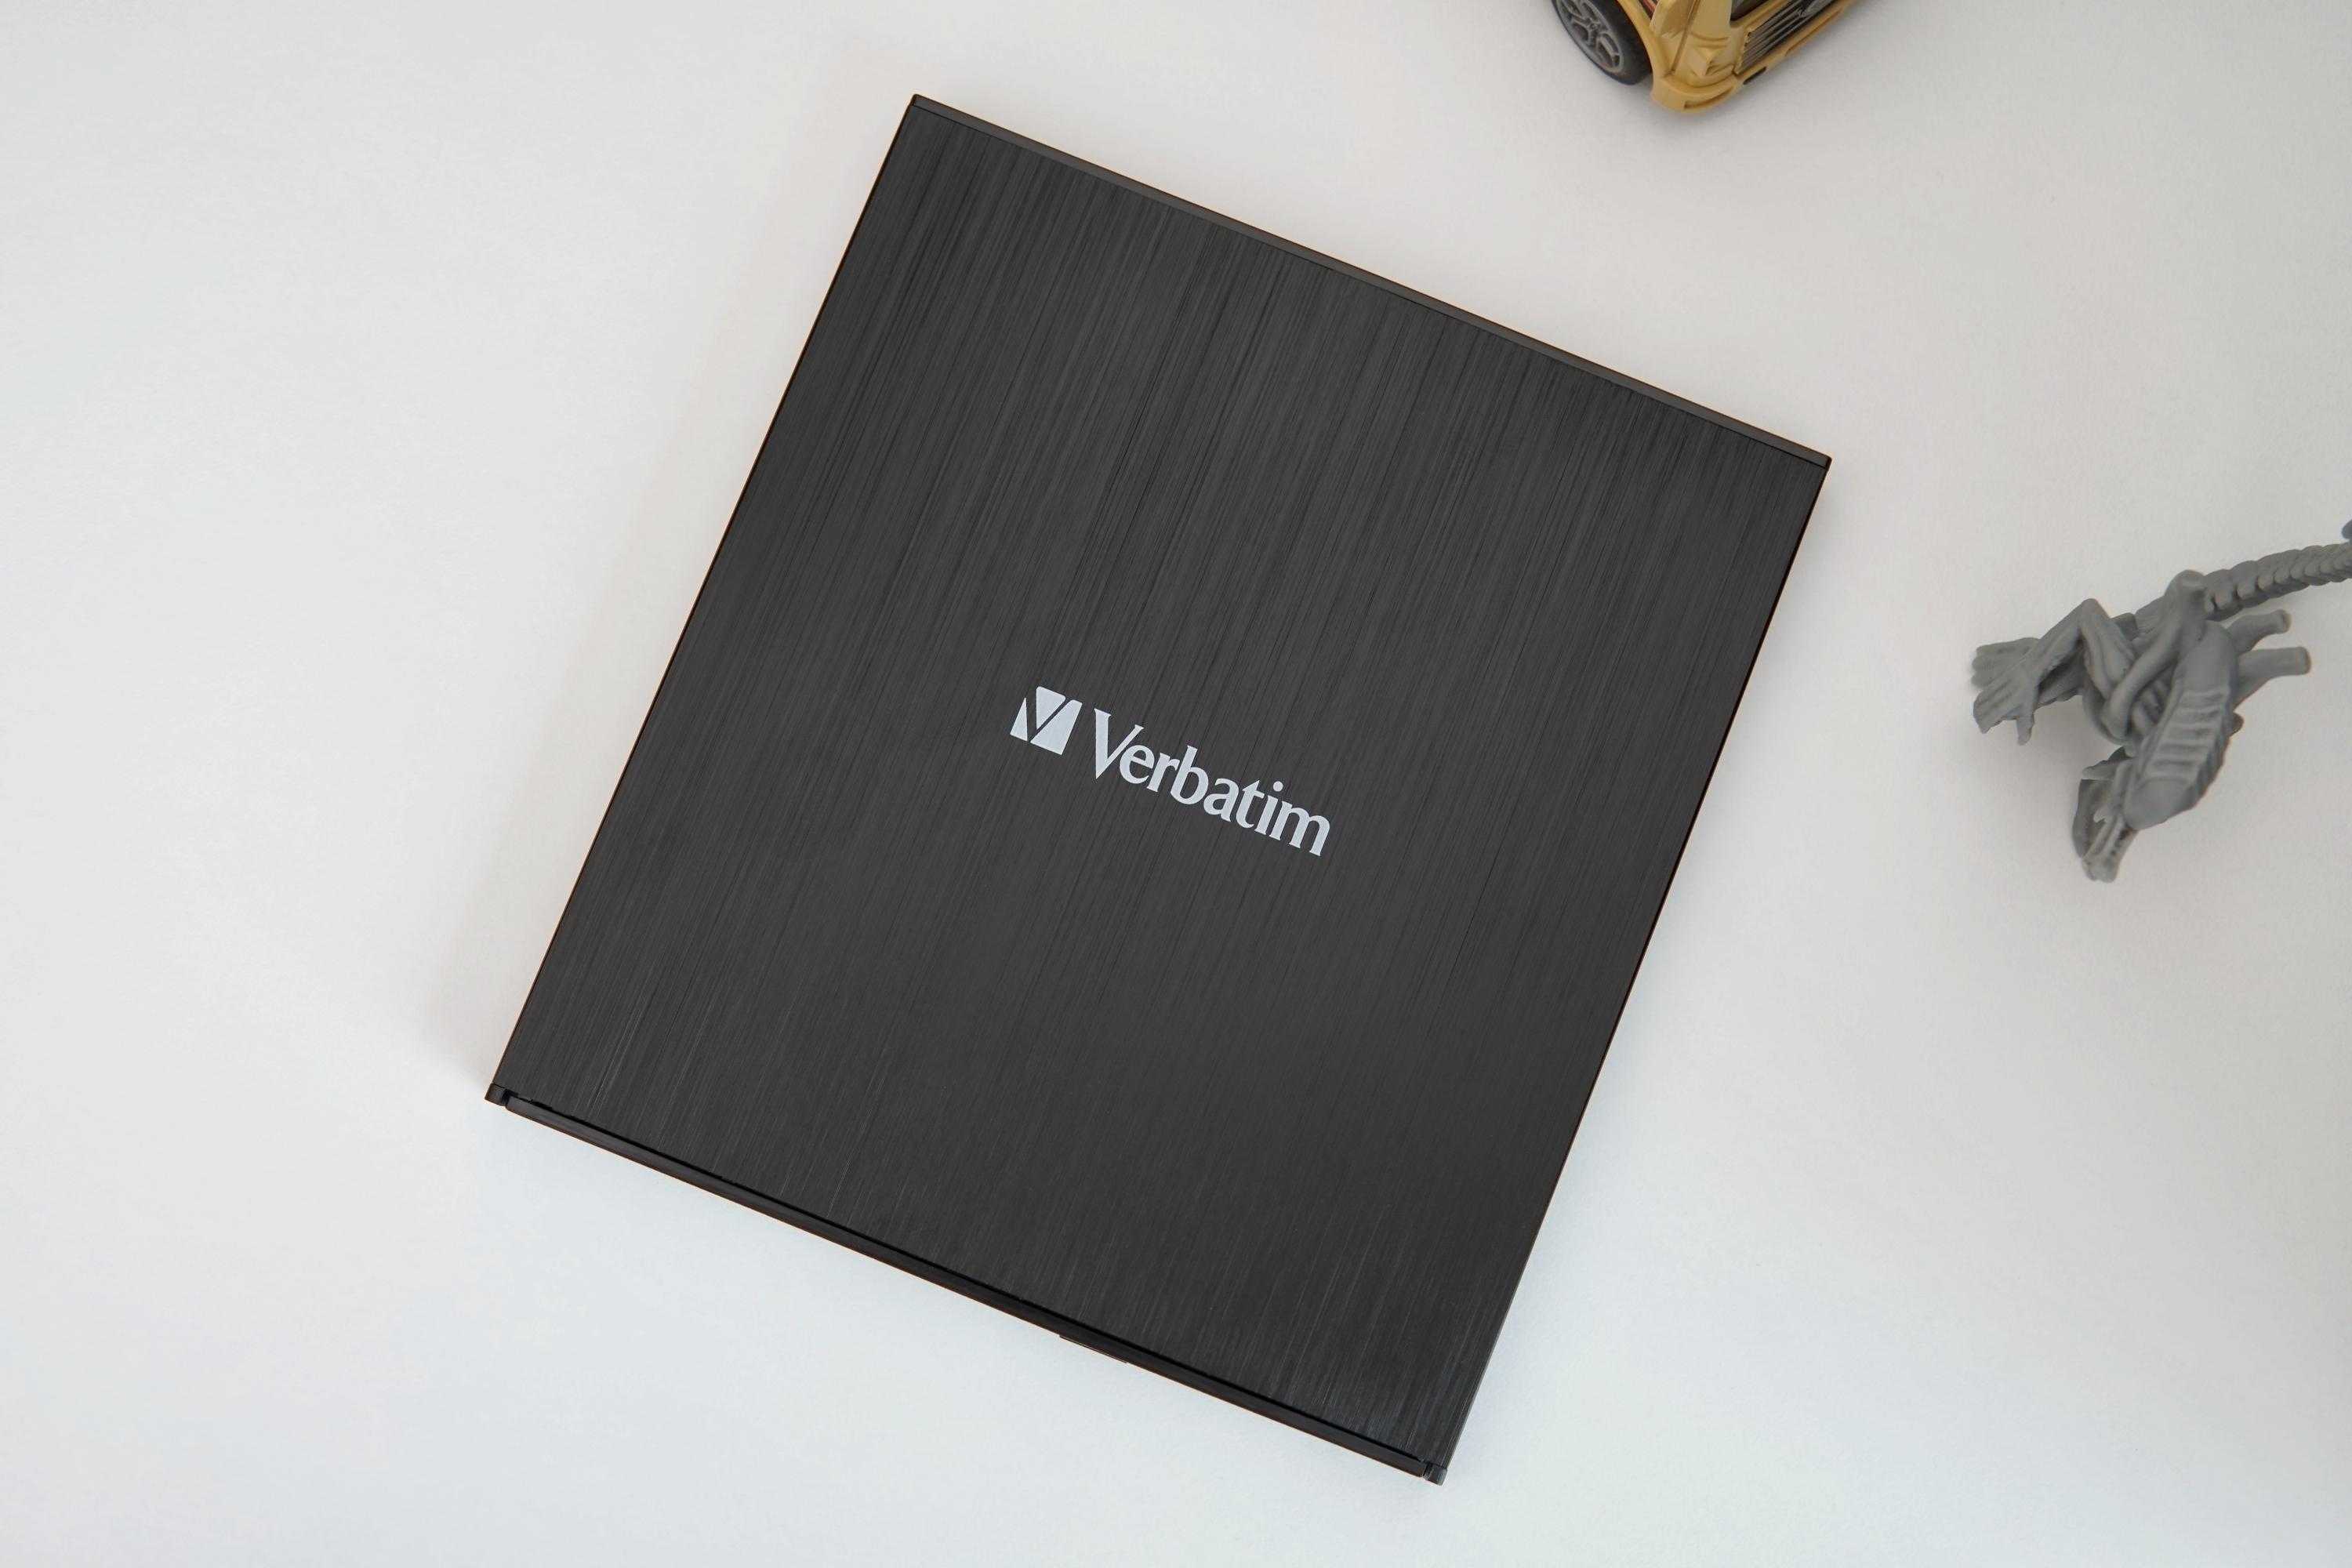 便携、高品质读写，百年传承——威宝Verbatim 4K HD超清刻录机